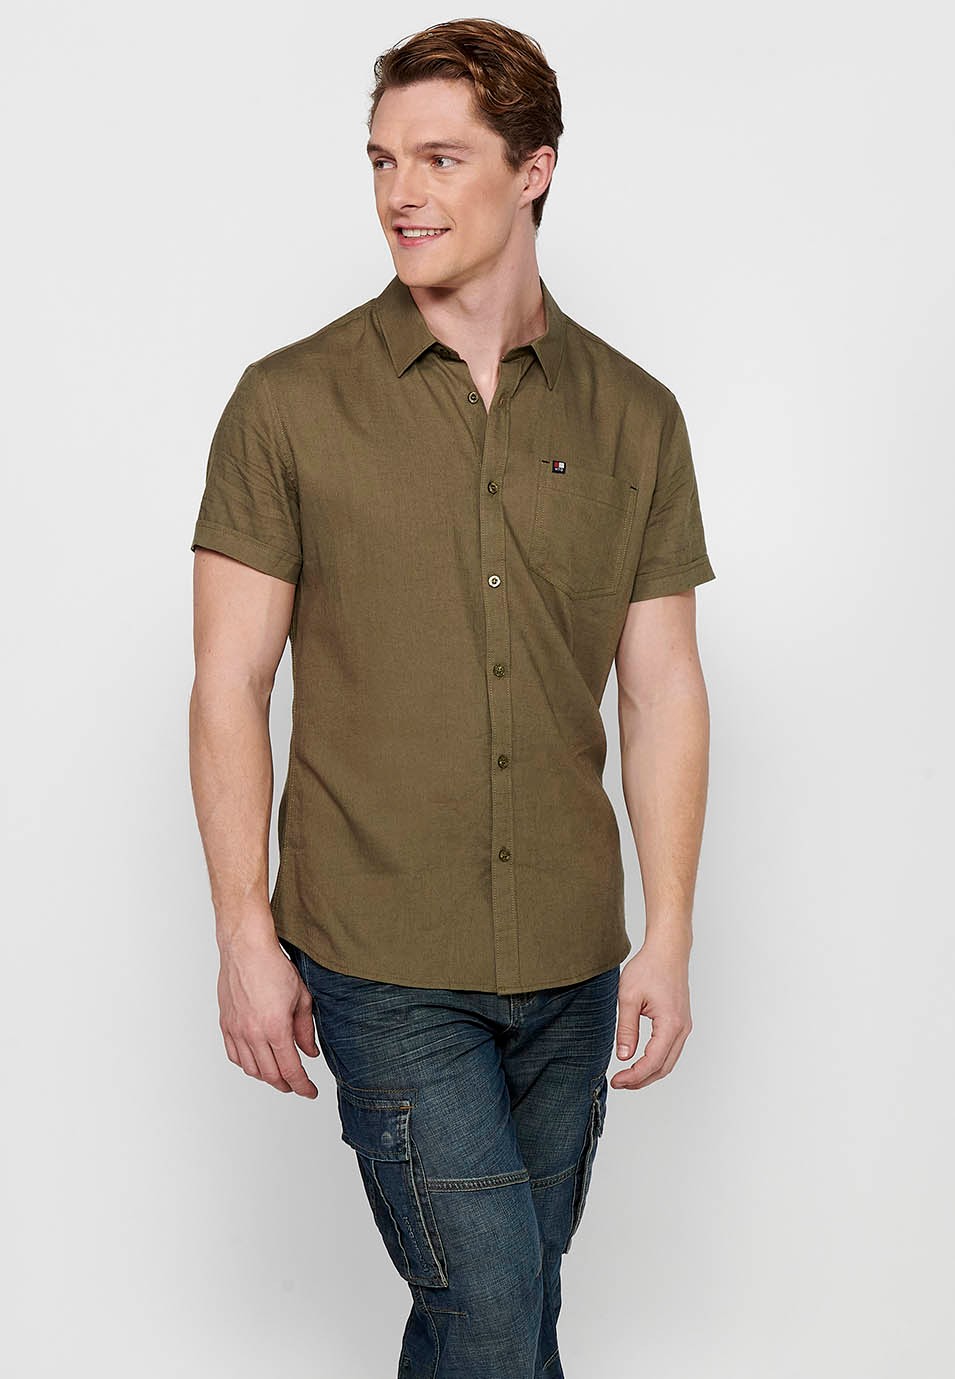 Short Sleeve Linen Shirt, khaki color, for men